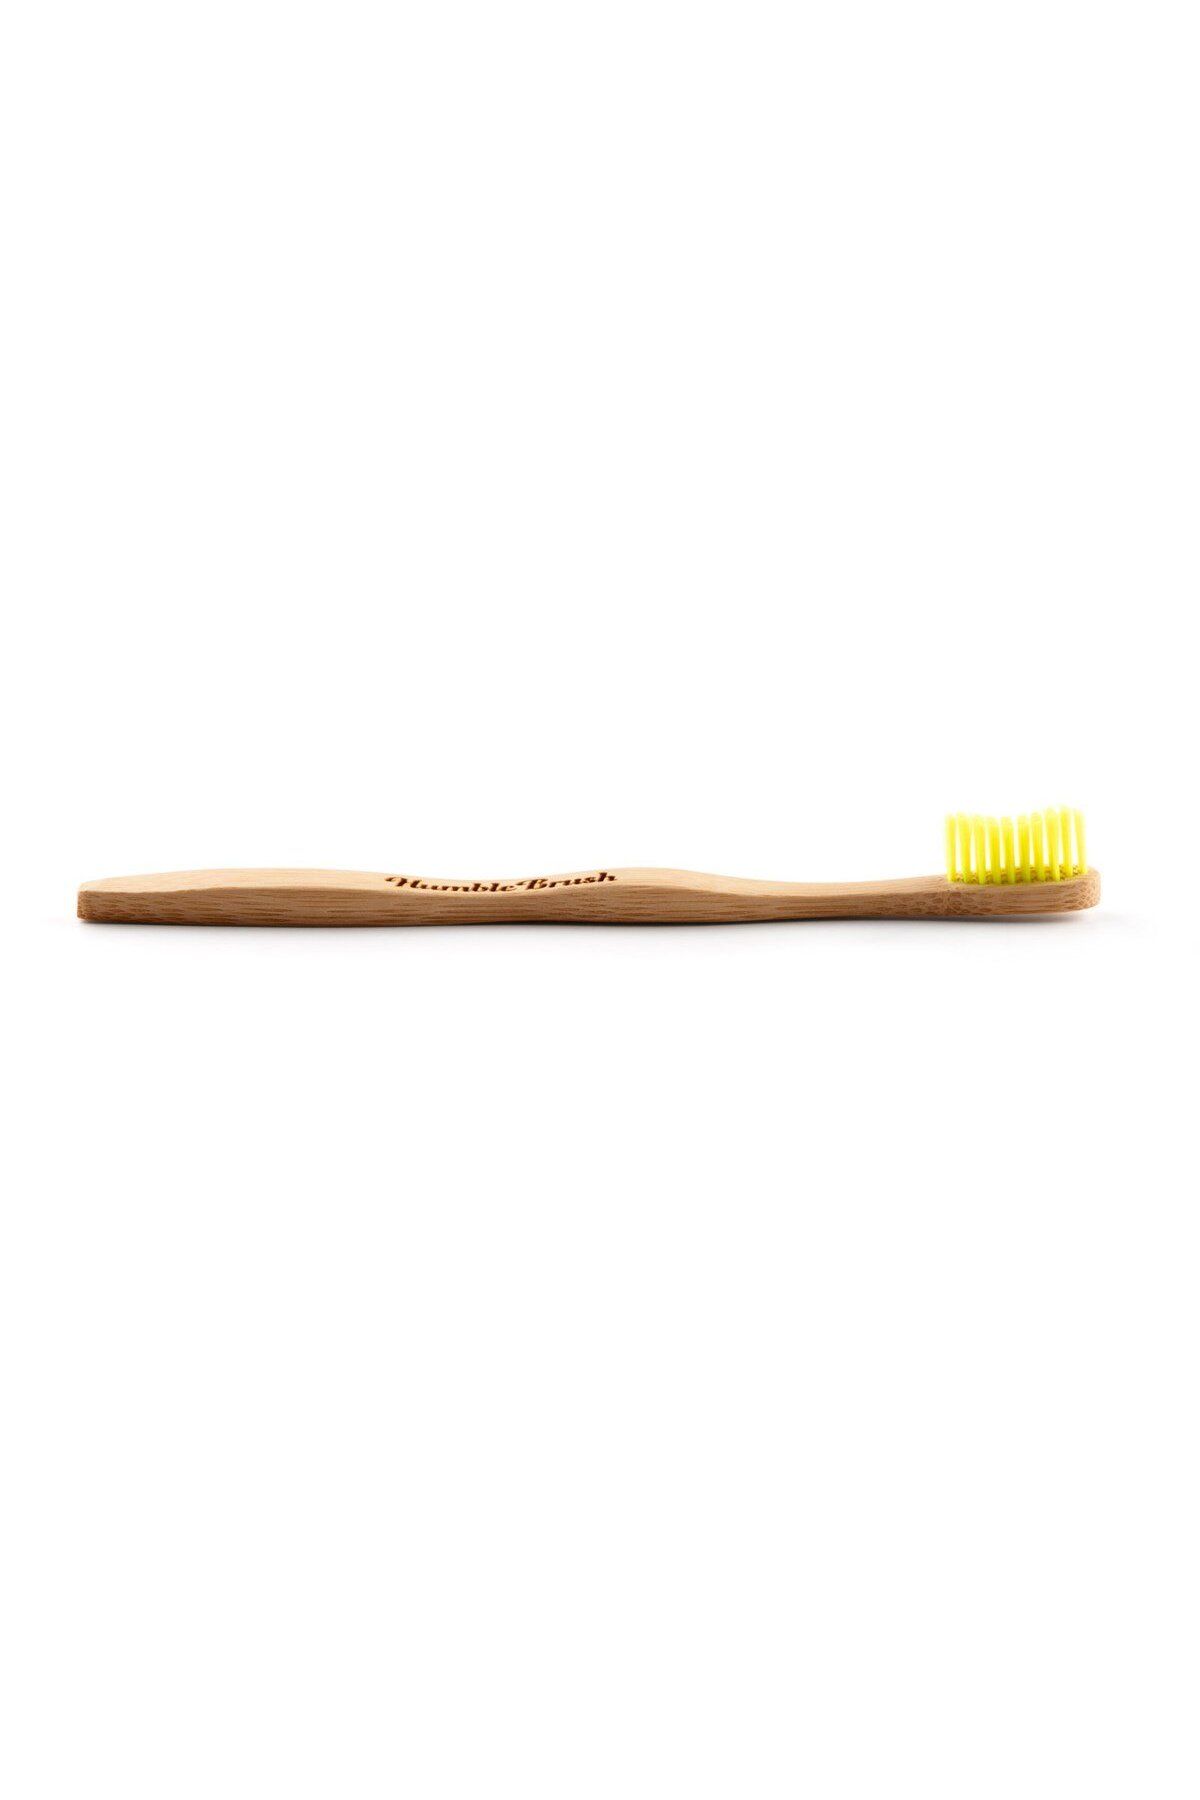 Humble Brush Yumuşak Diş Fırçası - Sarı